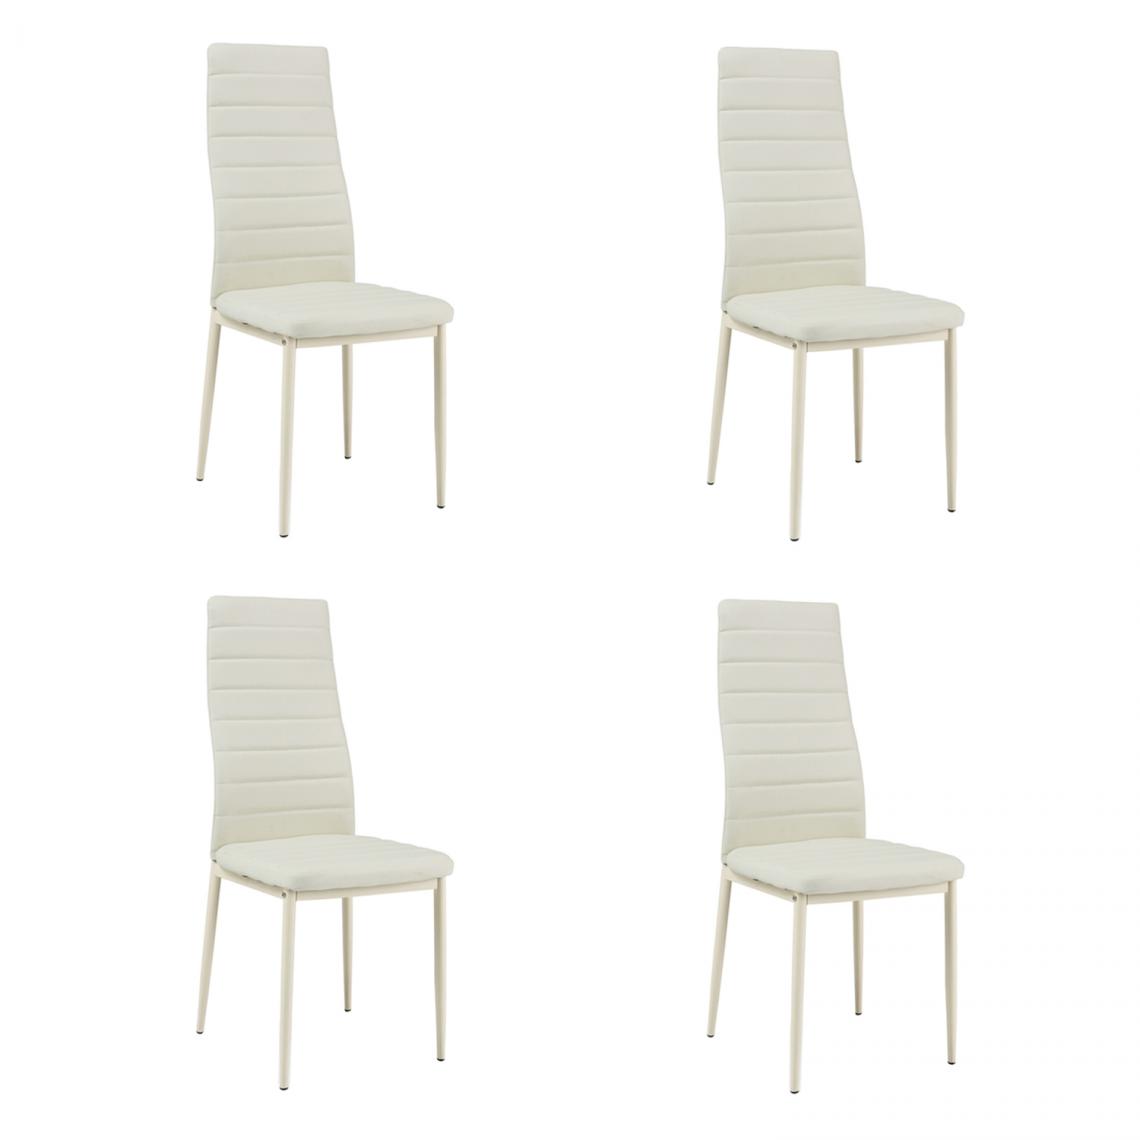 Hucoco - FRINN - Lot de 4 chaises rembourrées - 96x40x38 cm - Revêtement similicuir - Base en acier chromé - Beige - Chaises